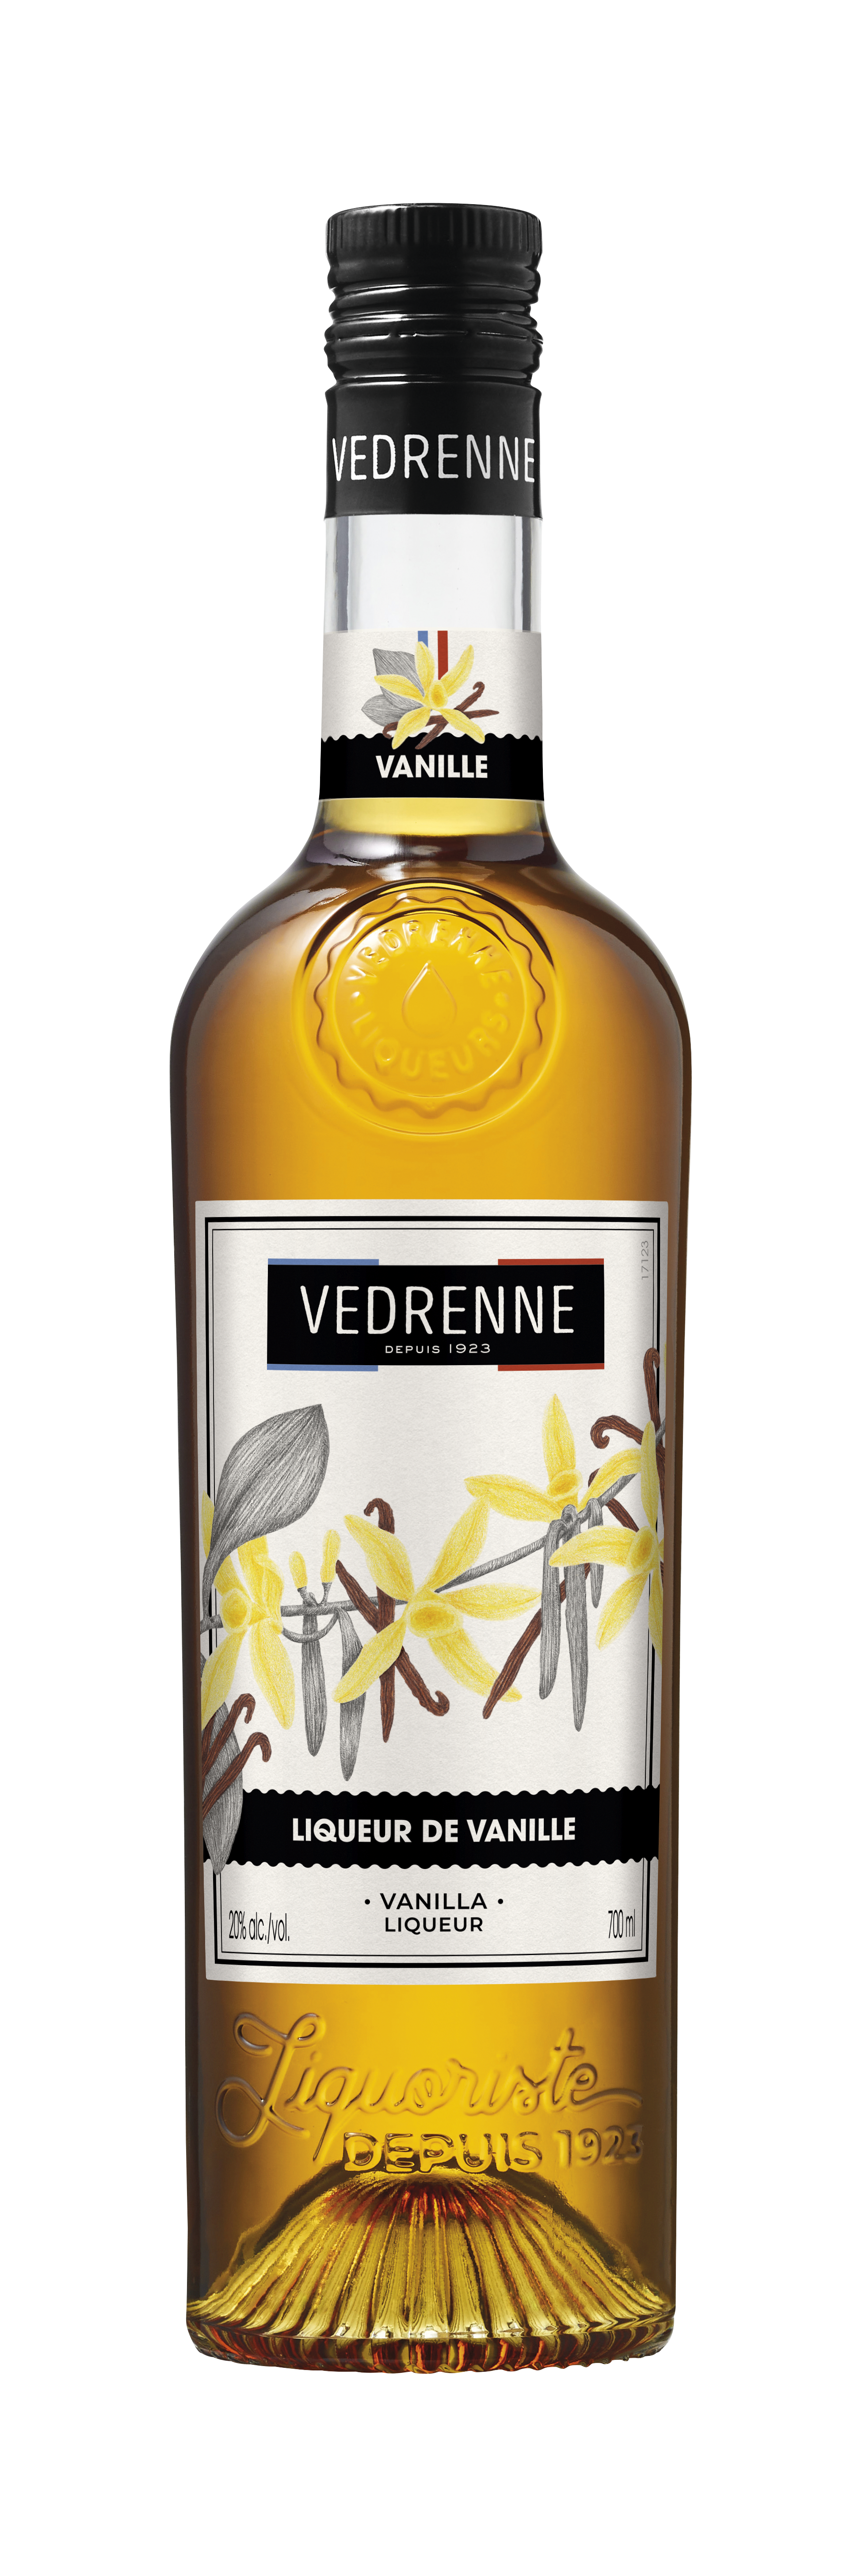 Liqueur de Vanille VEDRENNE 20% - 70cl